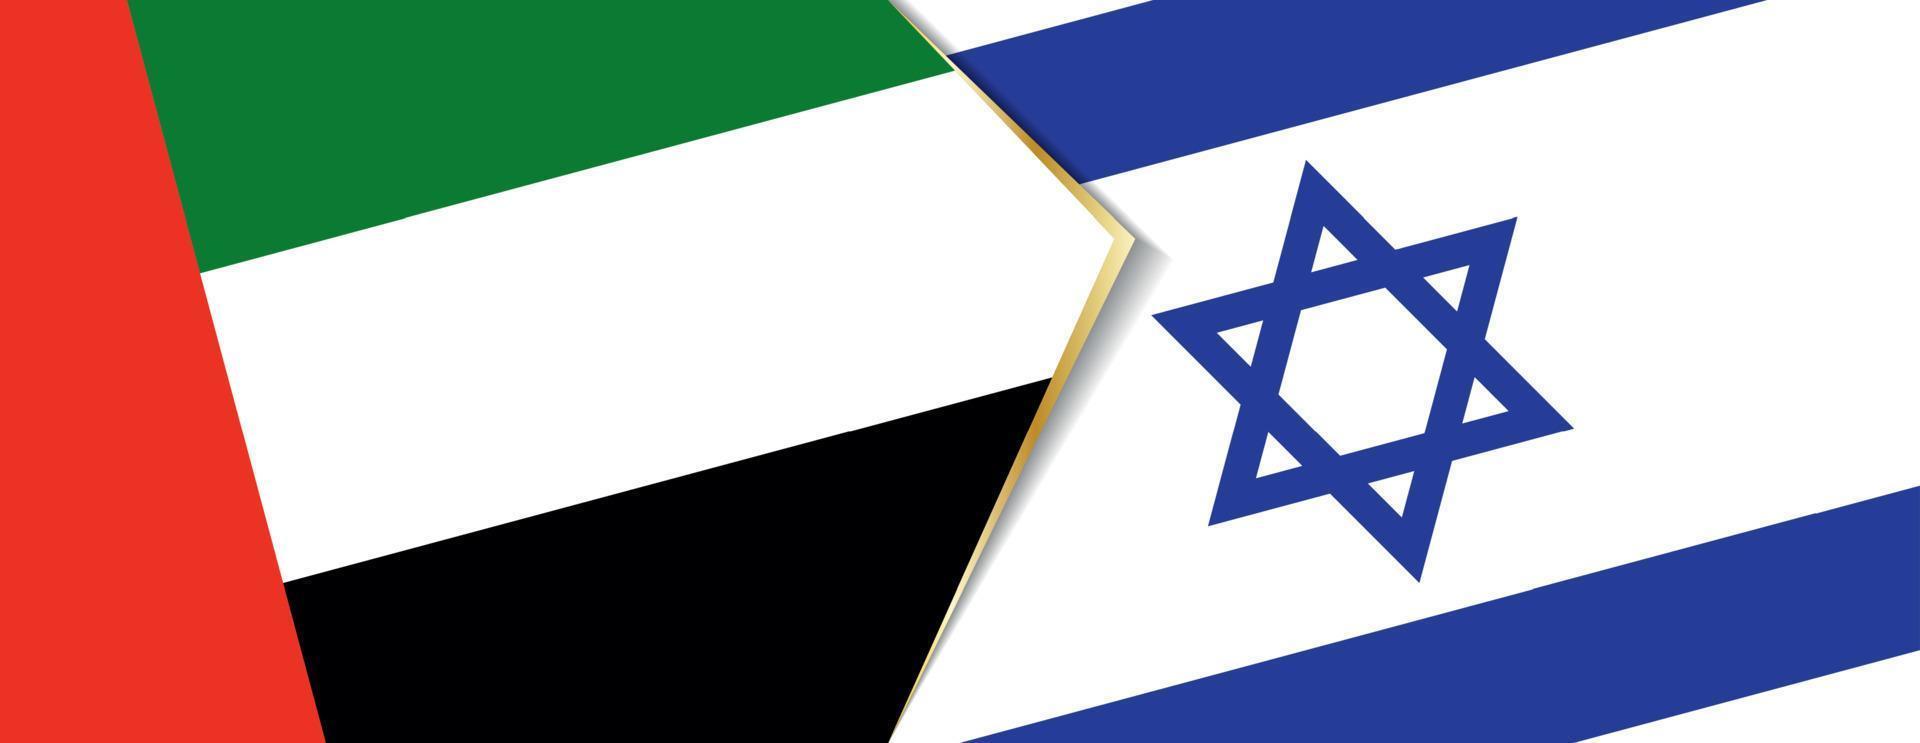 förenad arab emirates och Israel flaggor, två vektor flaggor.